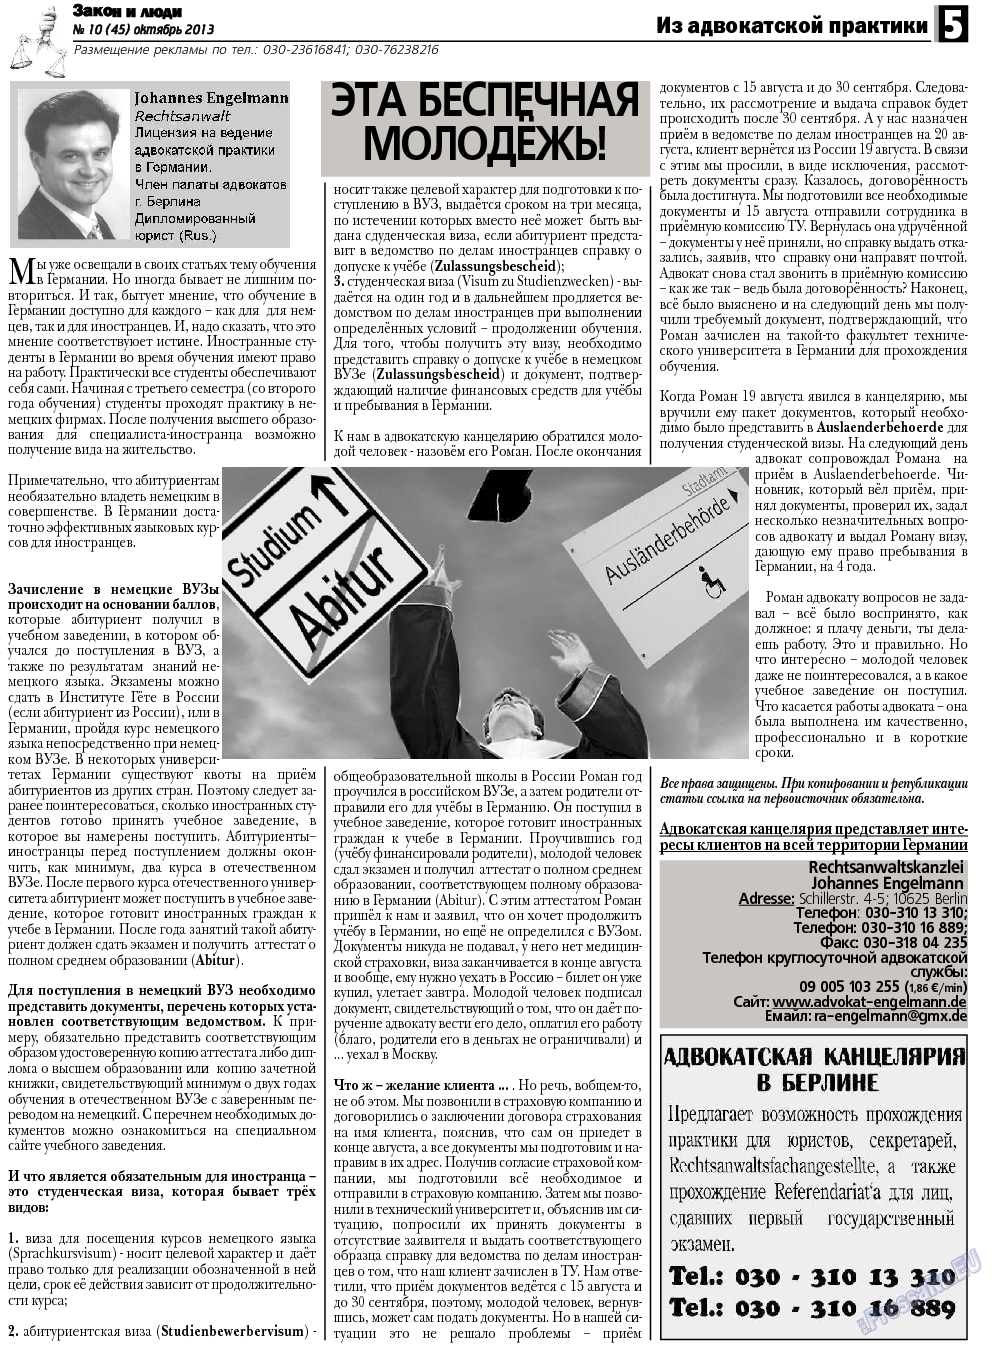 Закон и люди (газета). 2013 год, номер 10, стр. 5